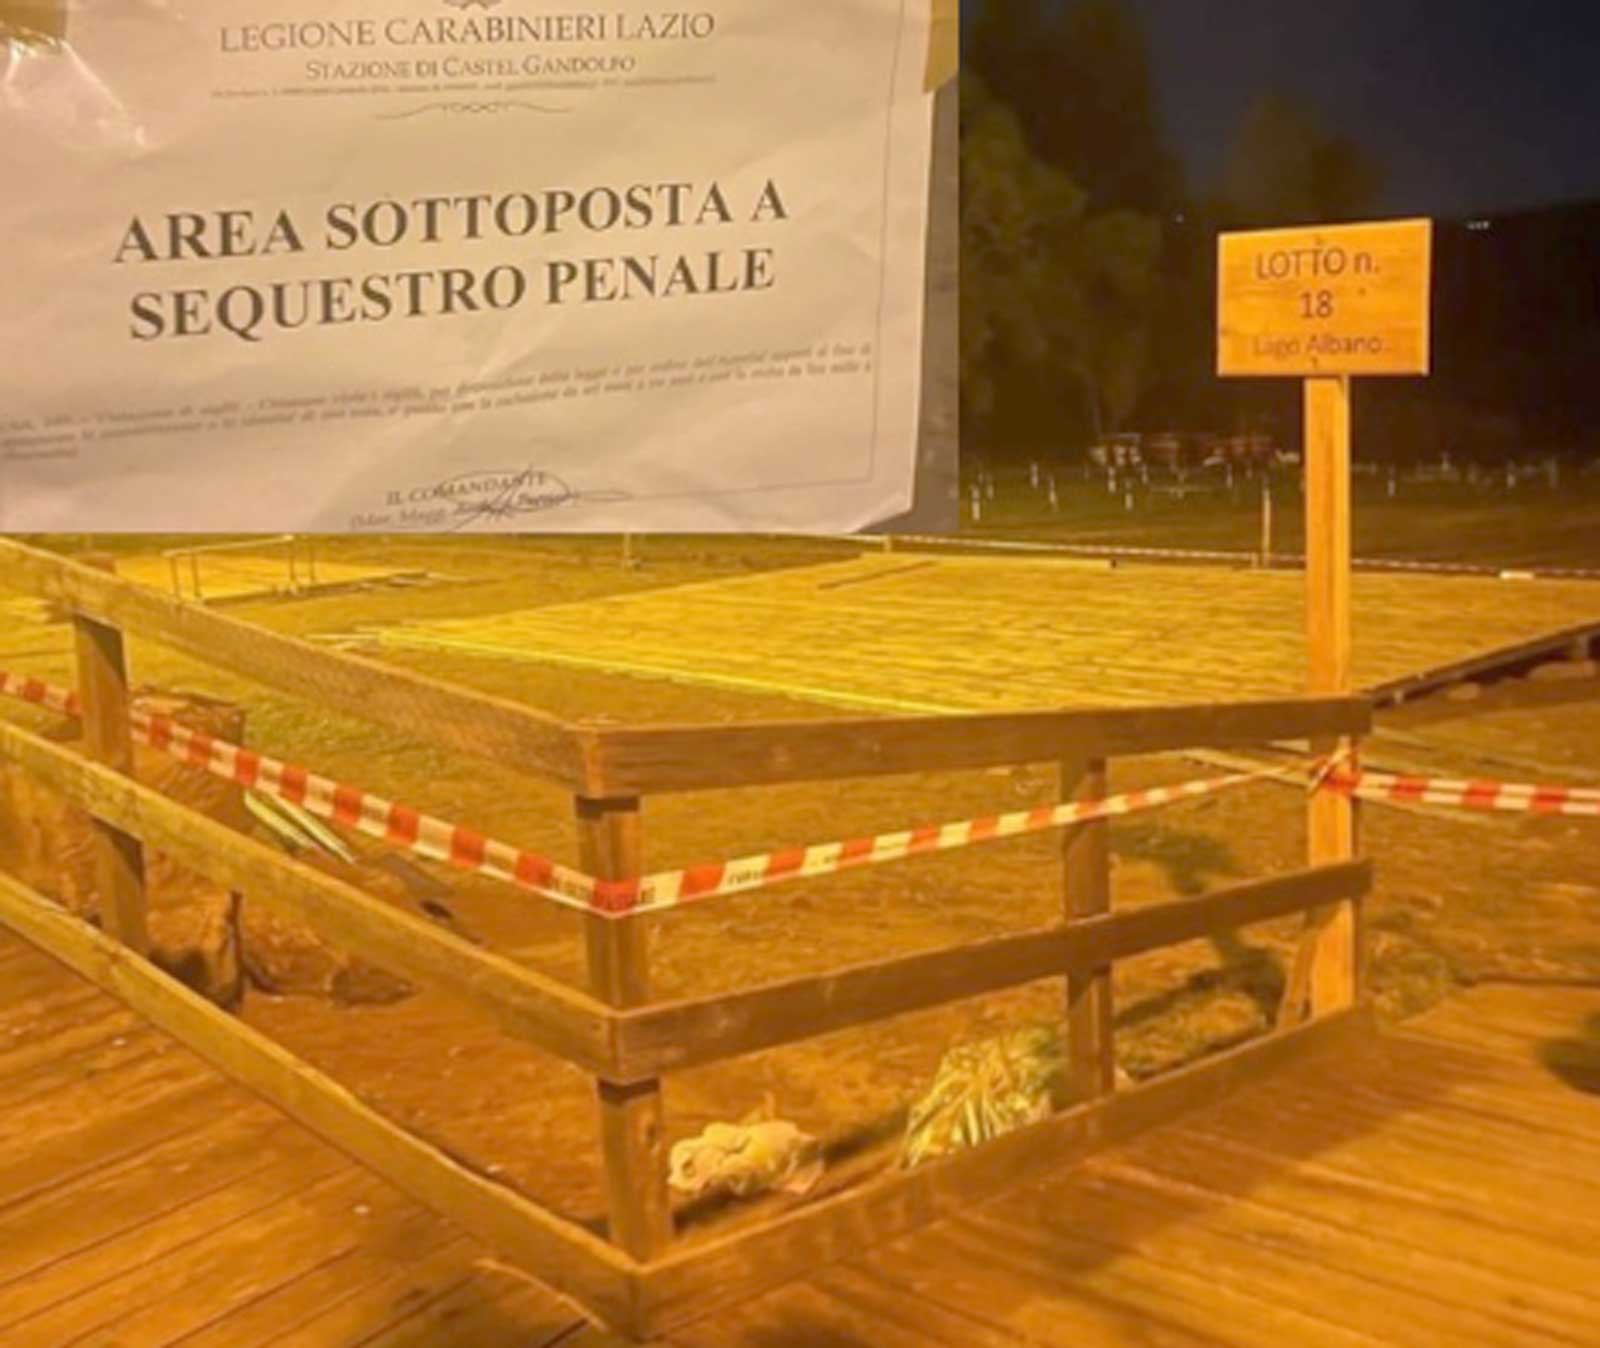 Abusi edilizi in spiaggia al lago di Castel Gandolfo: noto stabilimento sotto sequestro